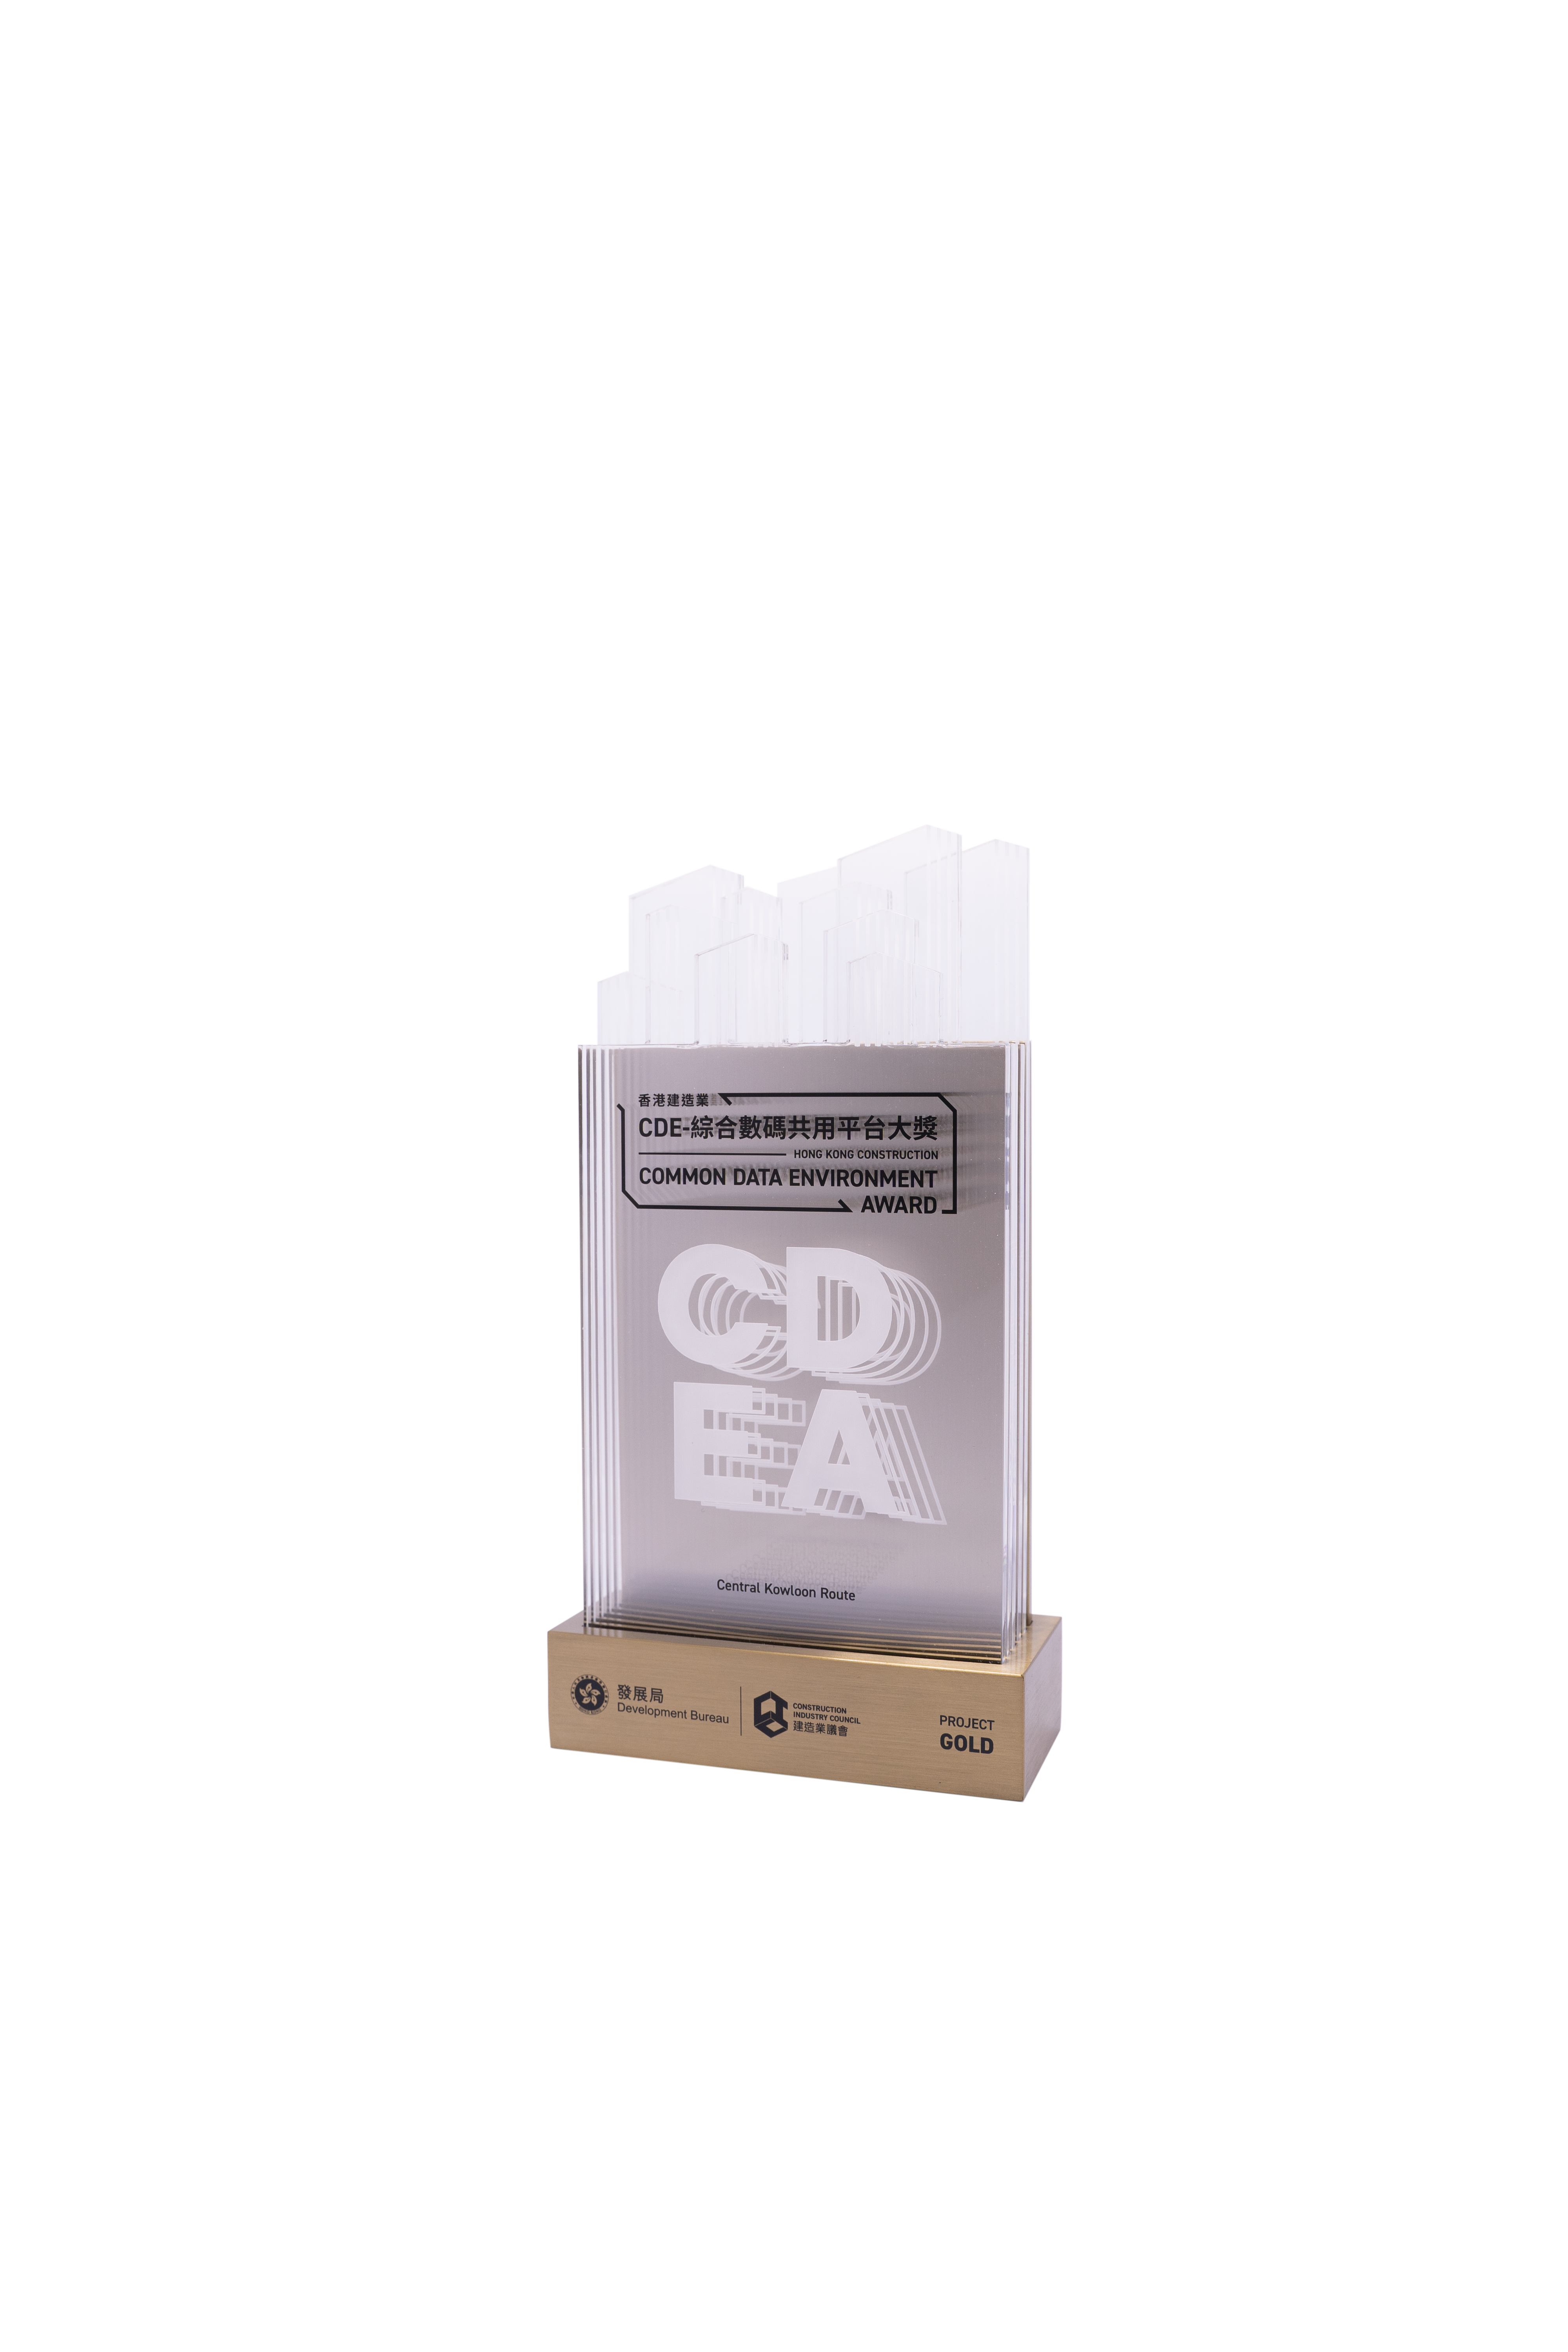 香港建造业CDE-综合数码共用平台大奖  (项目类别) 金奖